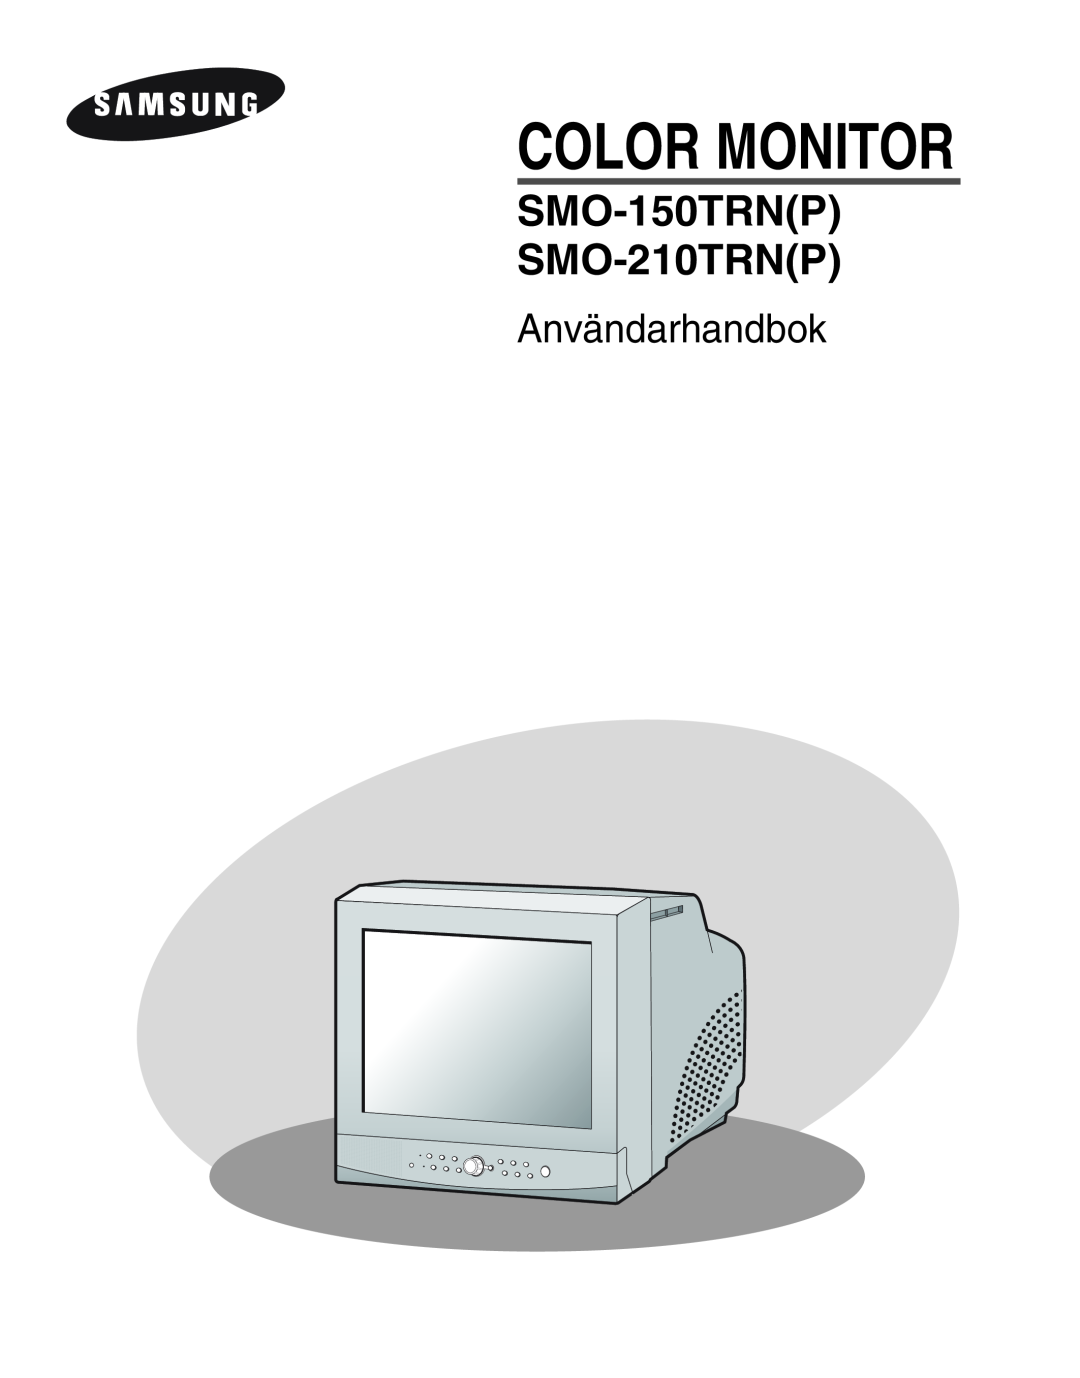 Samsung SMO-210TRP, SMO-210MP/UMG manual Användarhandbok, Color Monitor, SMO-150TRNP SMO-210TRNP 